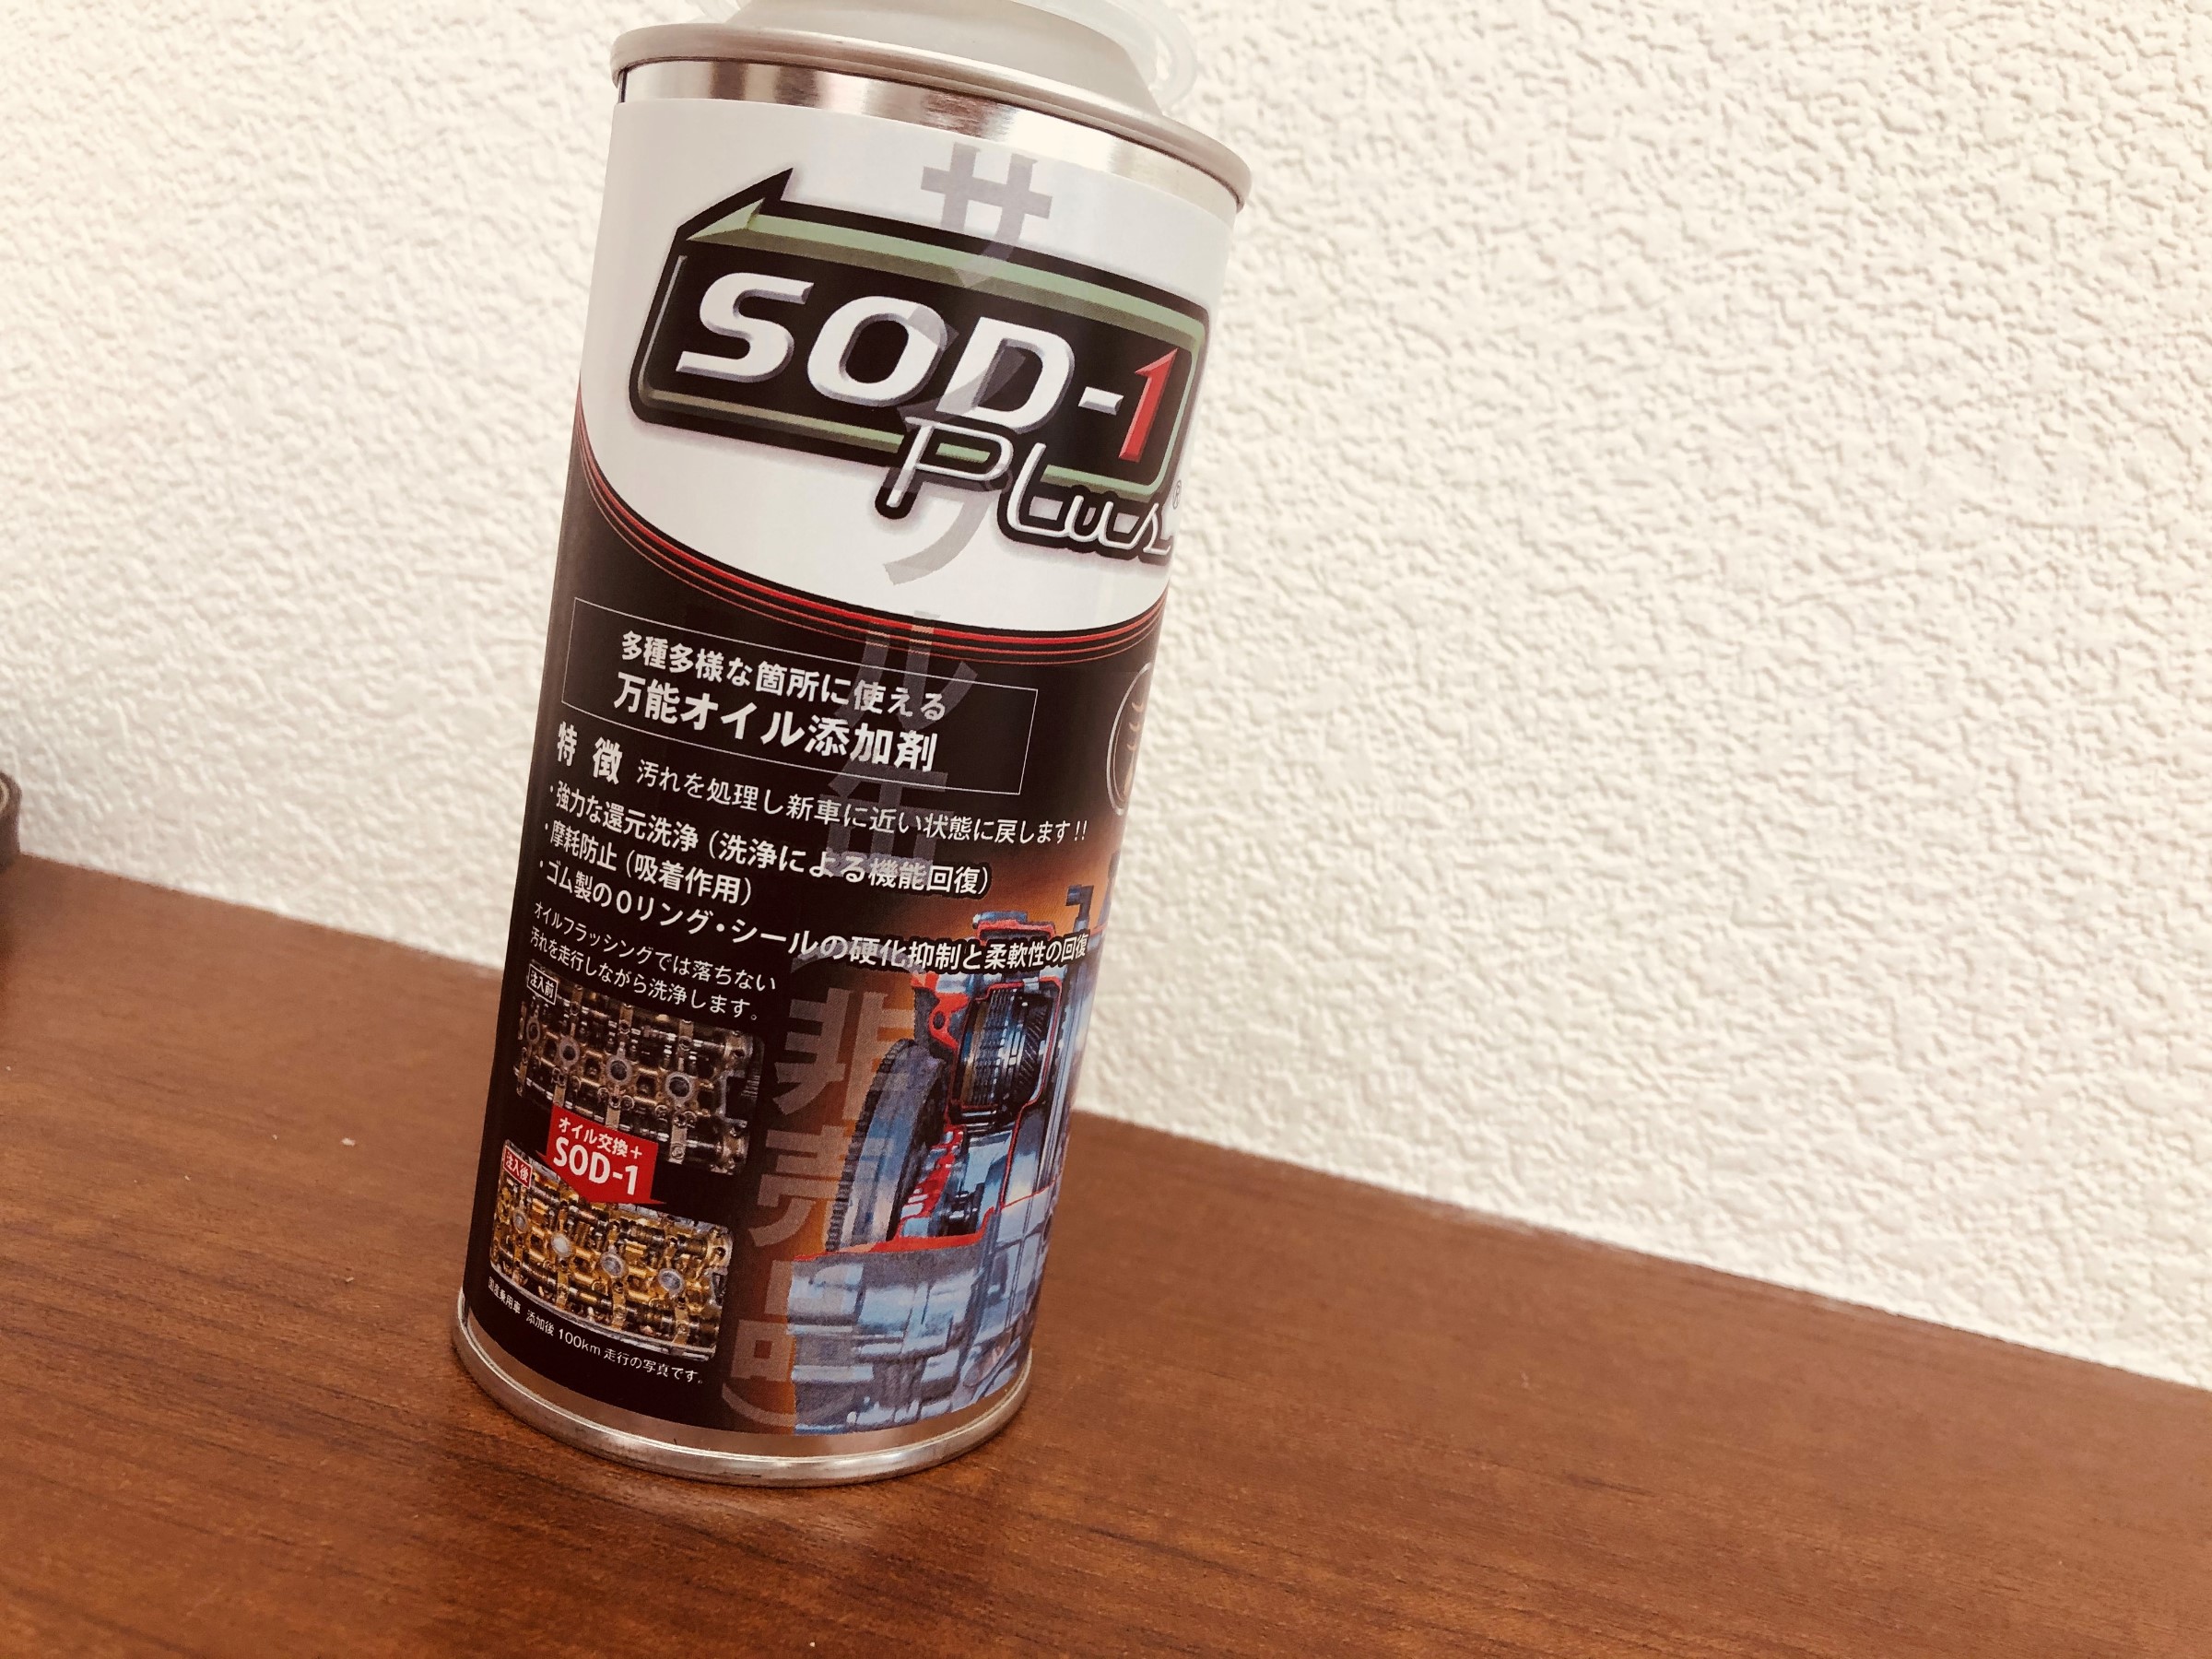 万能オイル添加剤～SOD-1 Plus～ | スタッフ日記 | タイヤ館 札幌